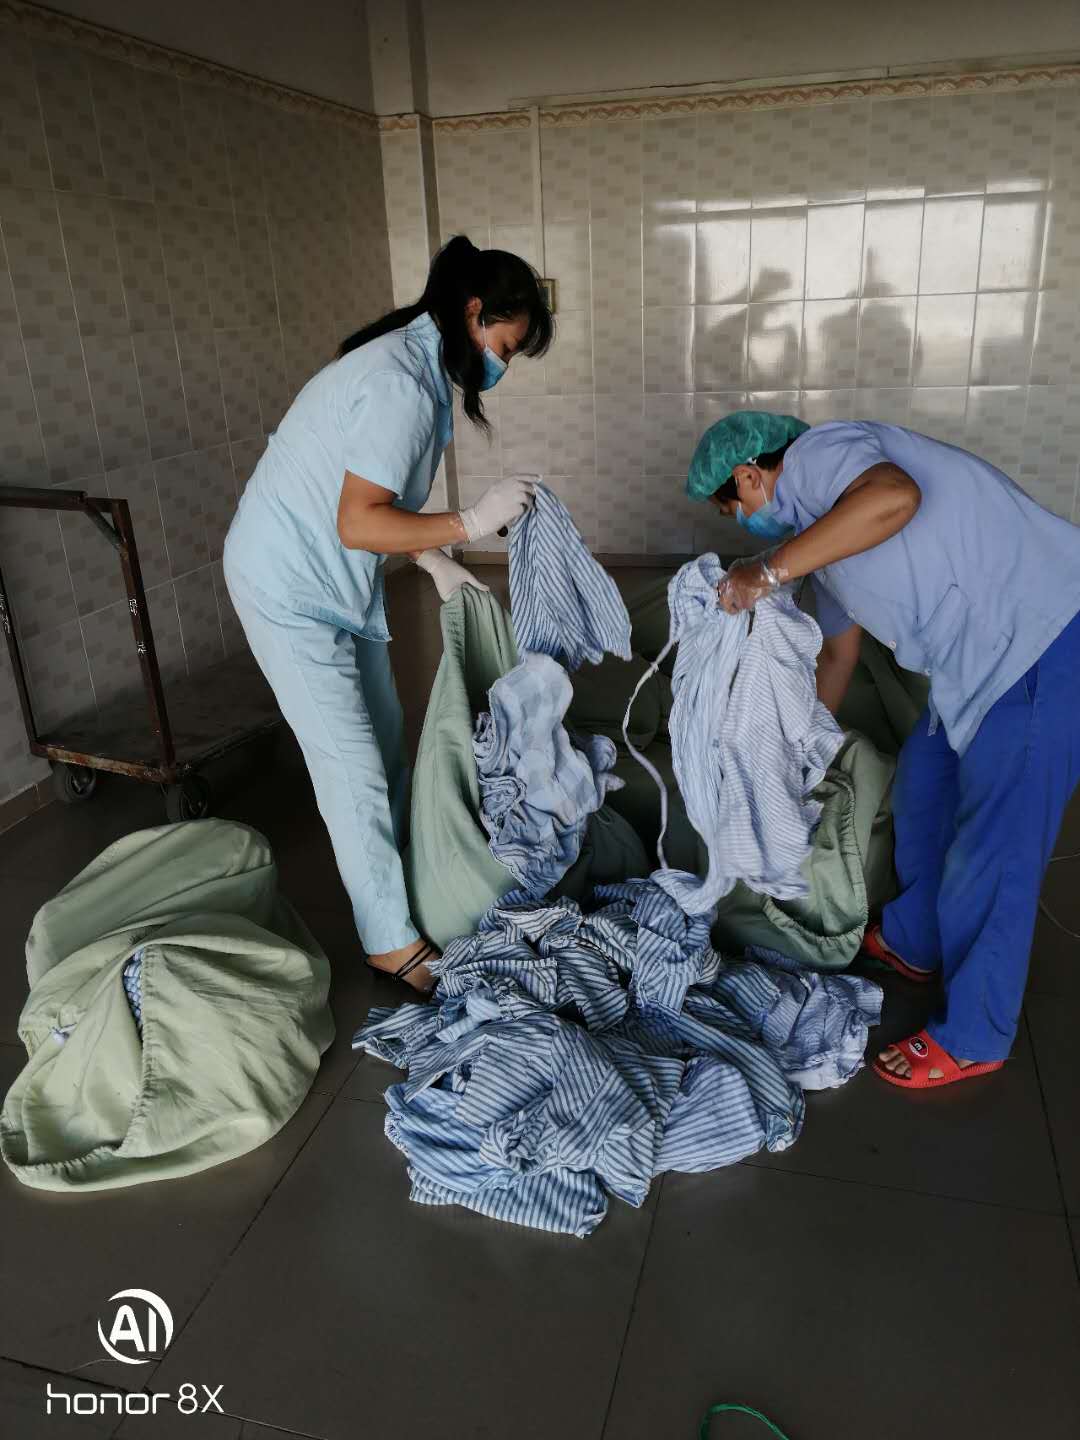 急患者之所急 海医二院从一大堆污衣中翻出丢失的现金